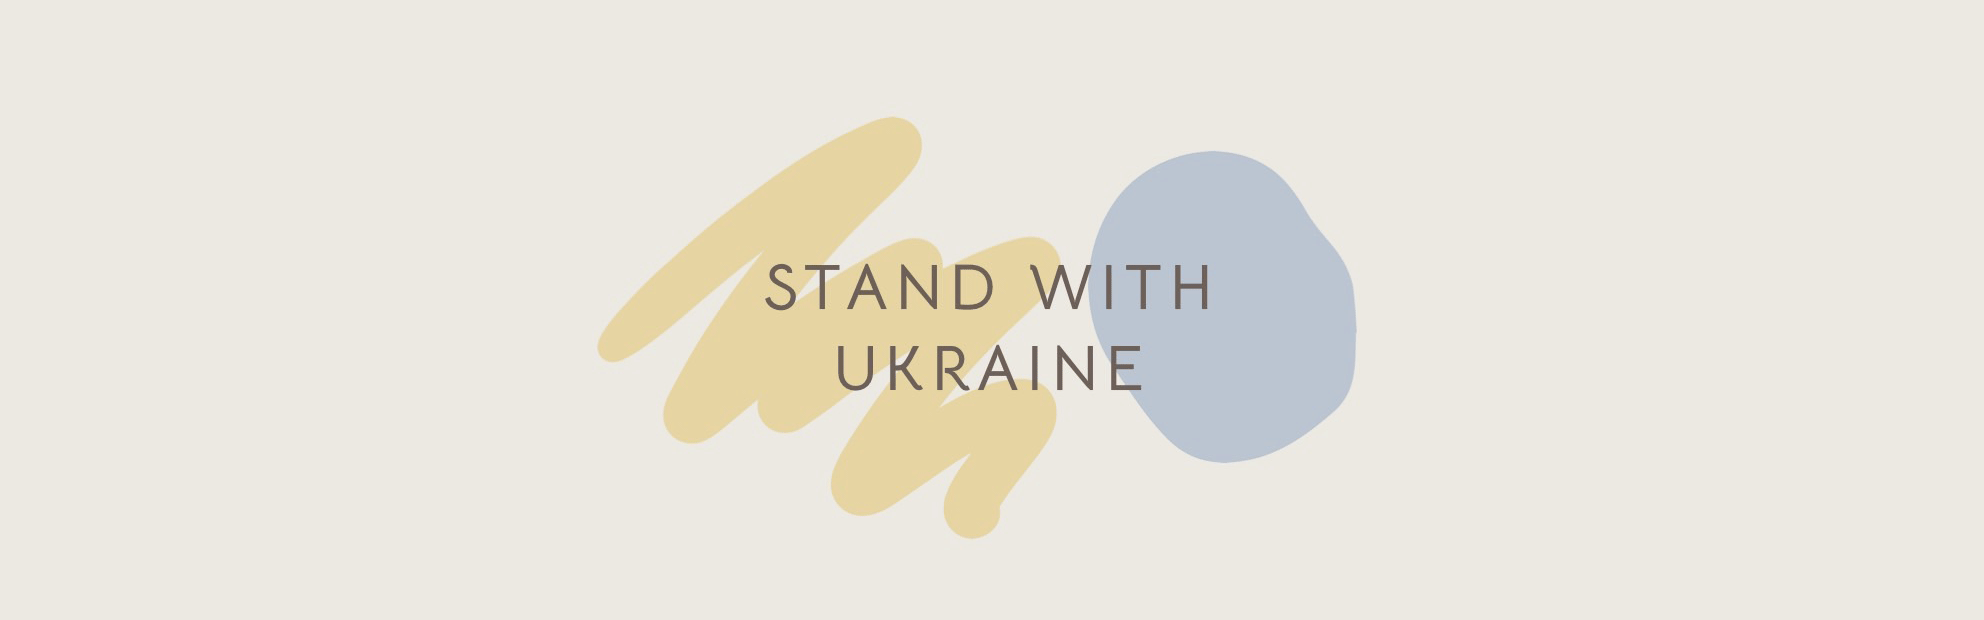 謝謝大家一起為烏克蘭盡一份心力